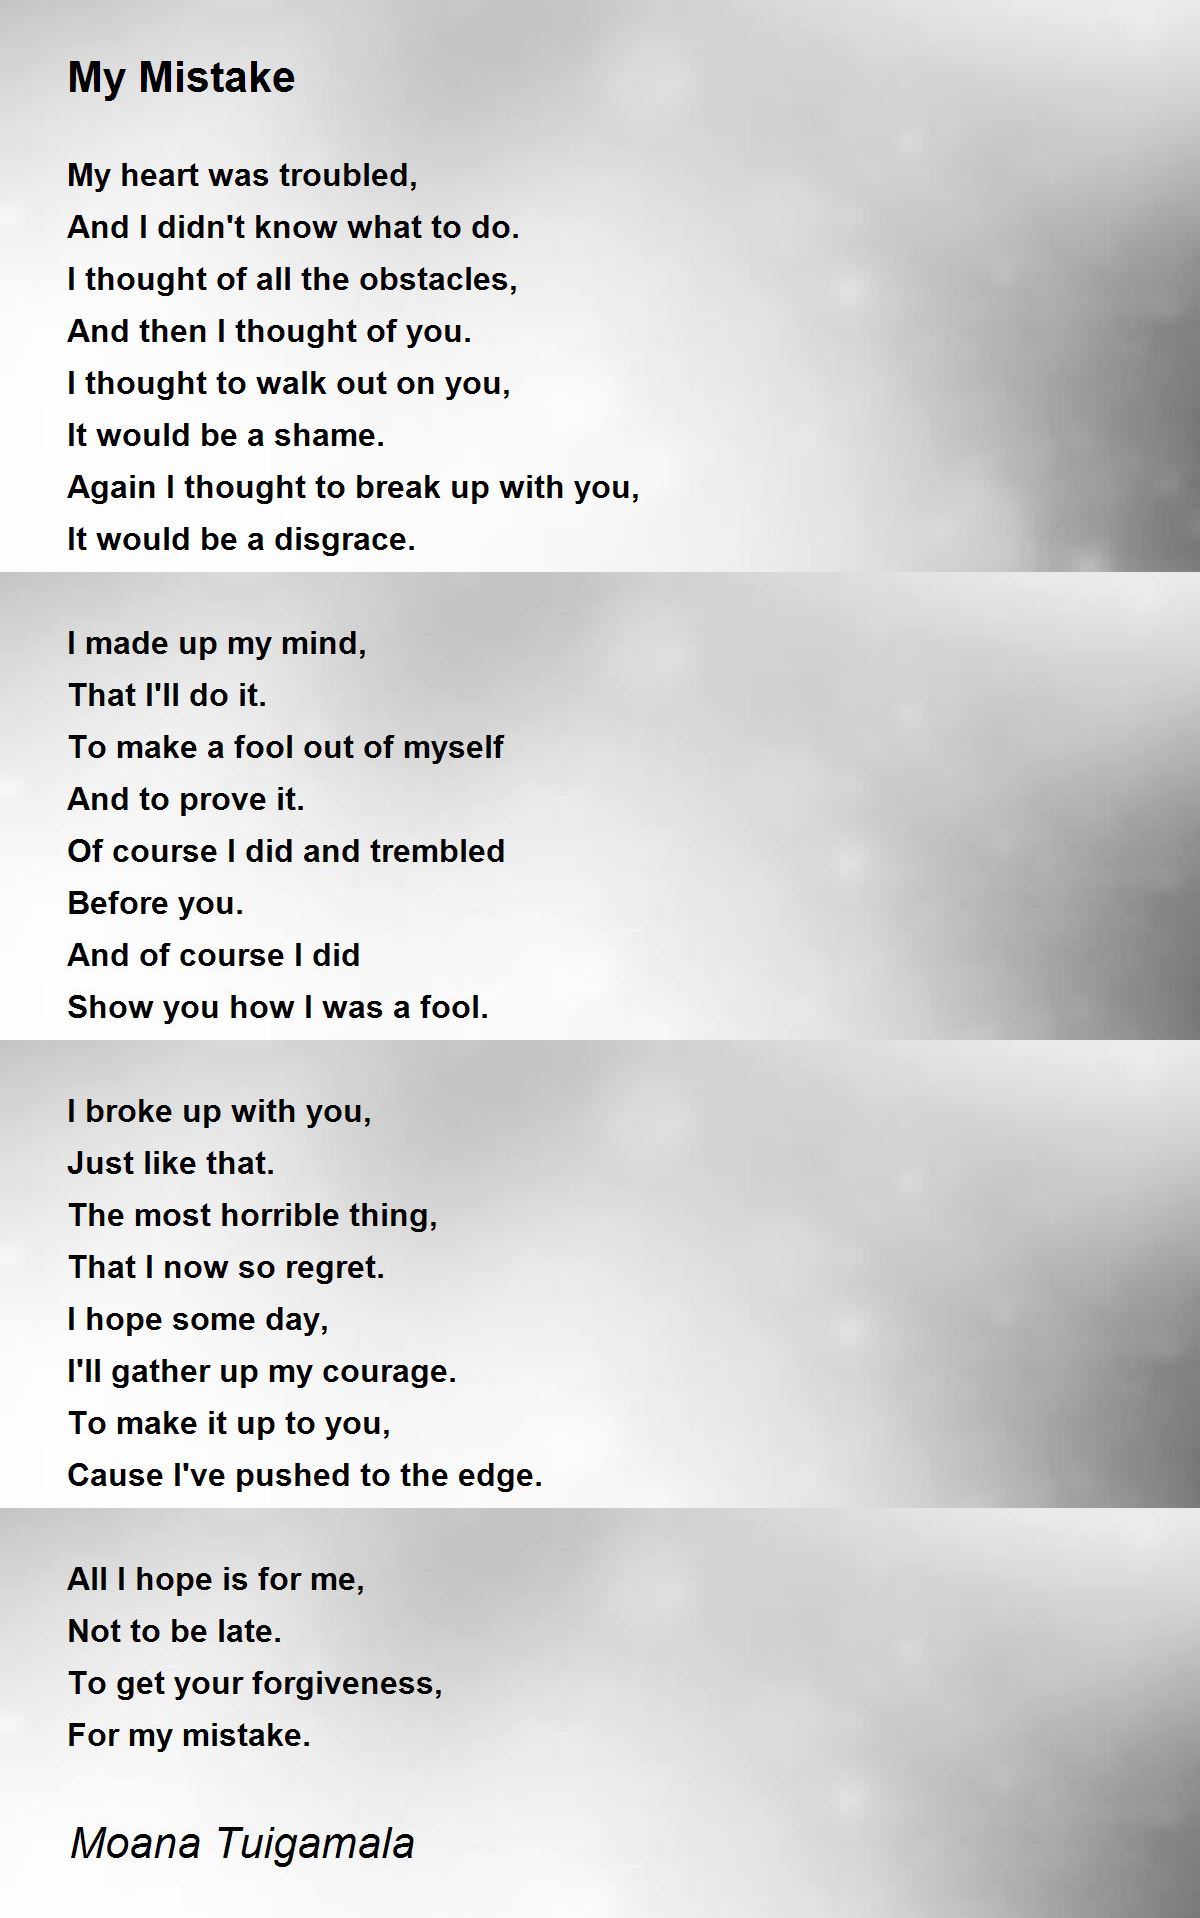 Quieting Mistake - Quieting Mistake Poem by Ima Ryma